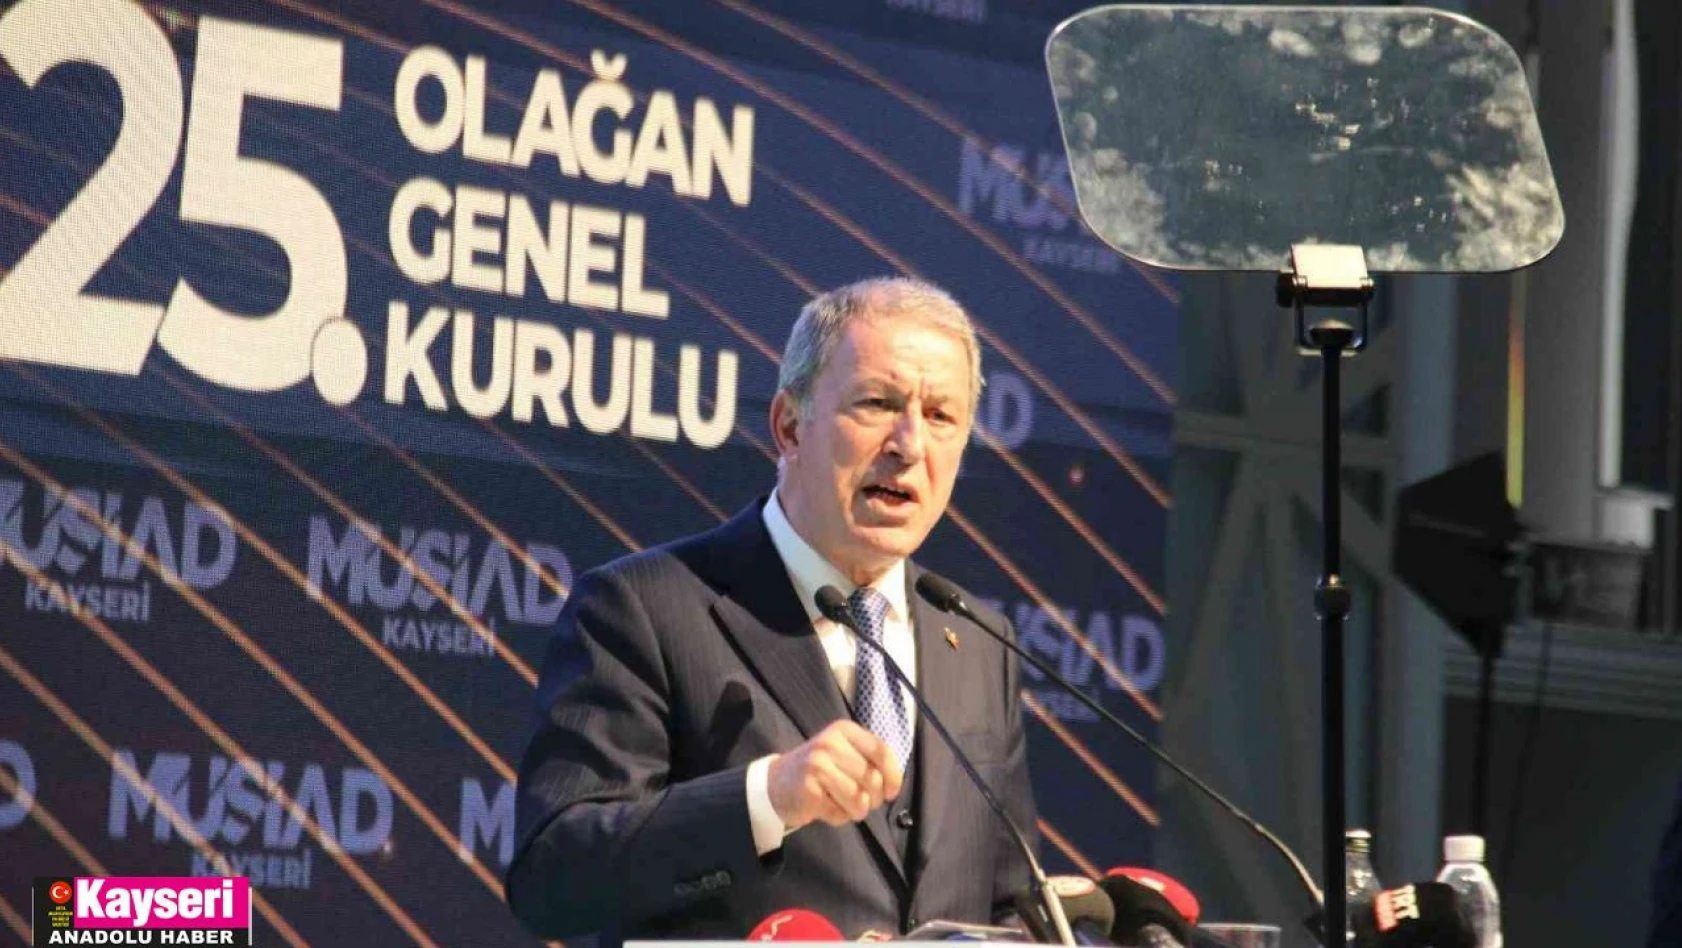 Bakan Akar: 'Haince yapılan eylemlere karşı, ahlaksızlara karşı, Kur'an yakan şerefsizlere karşı Türkiye var'